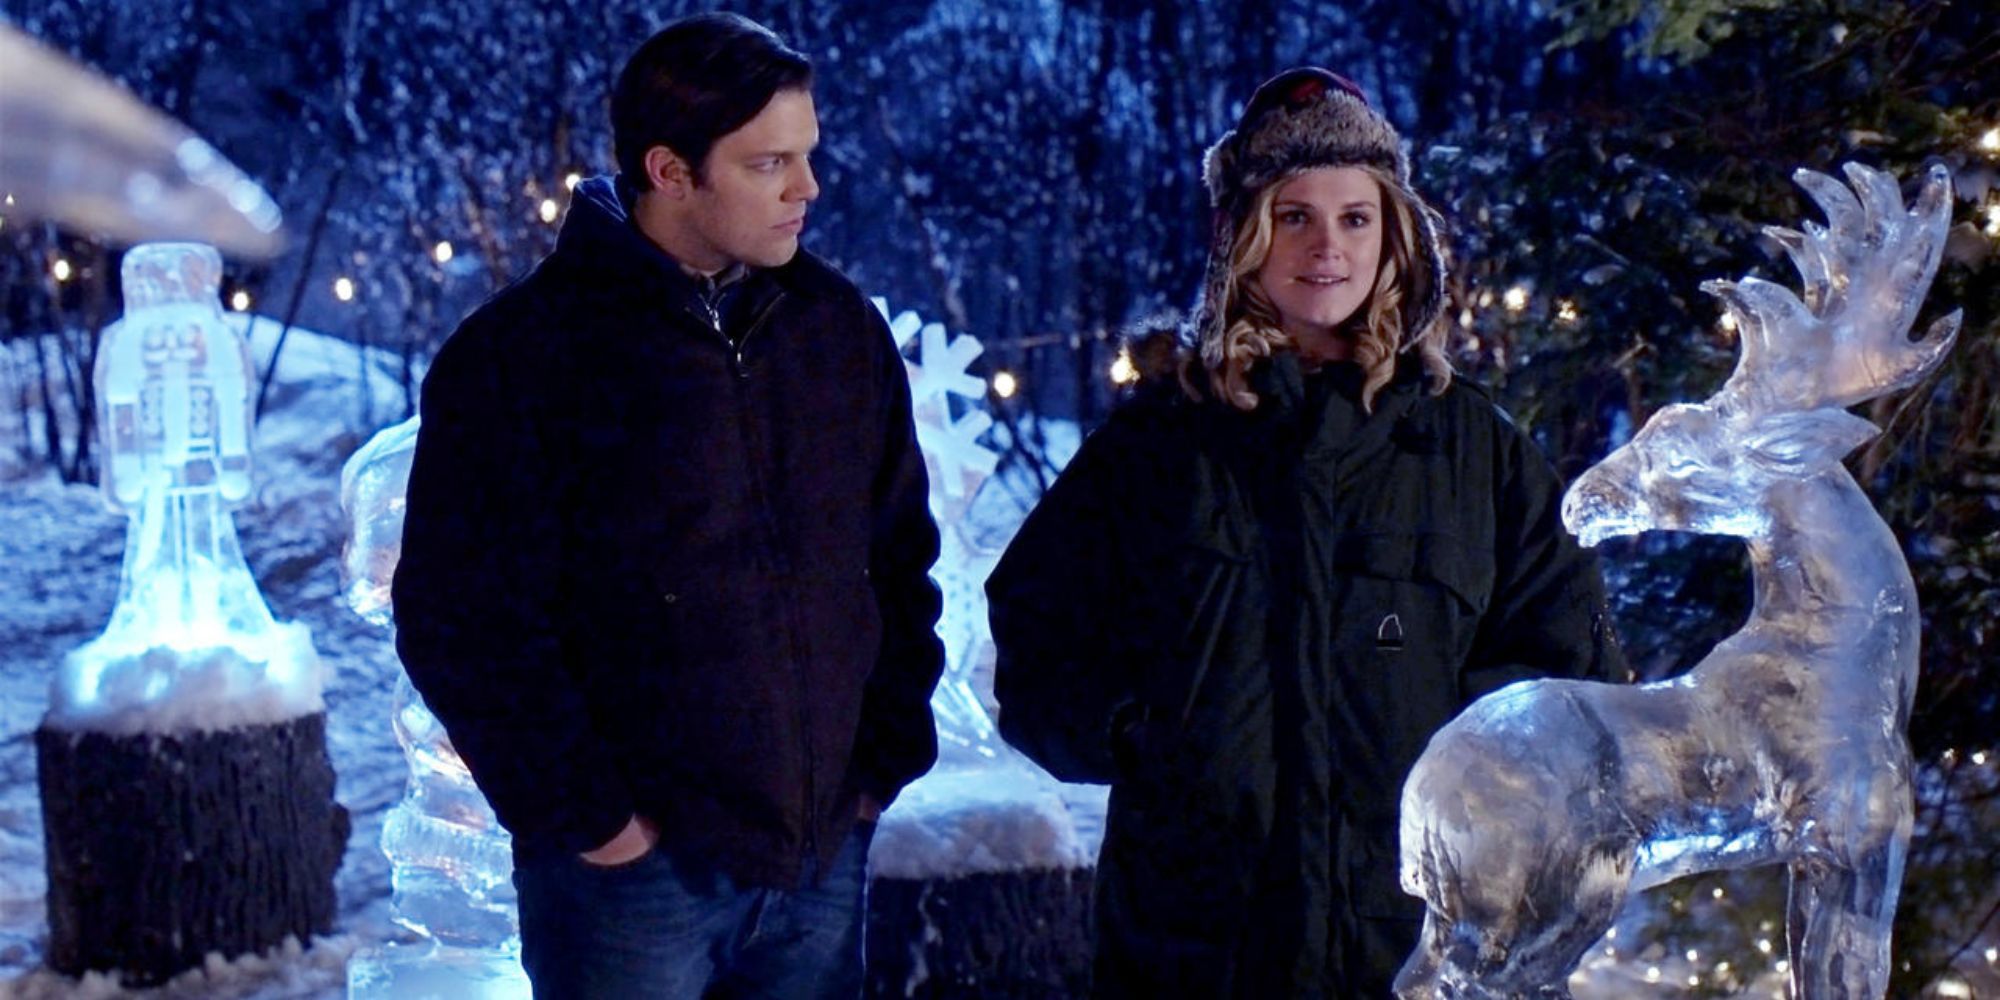 Jake e Ellen da herança de Natal juntos perto da estátua de neve